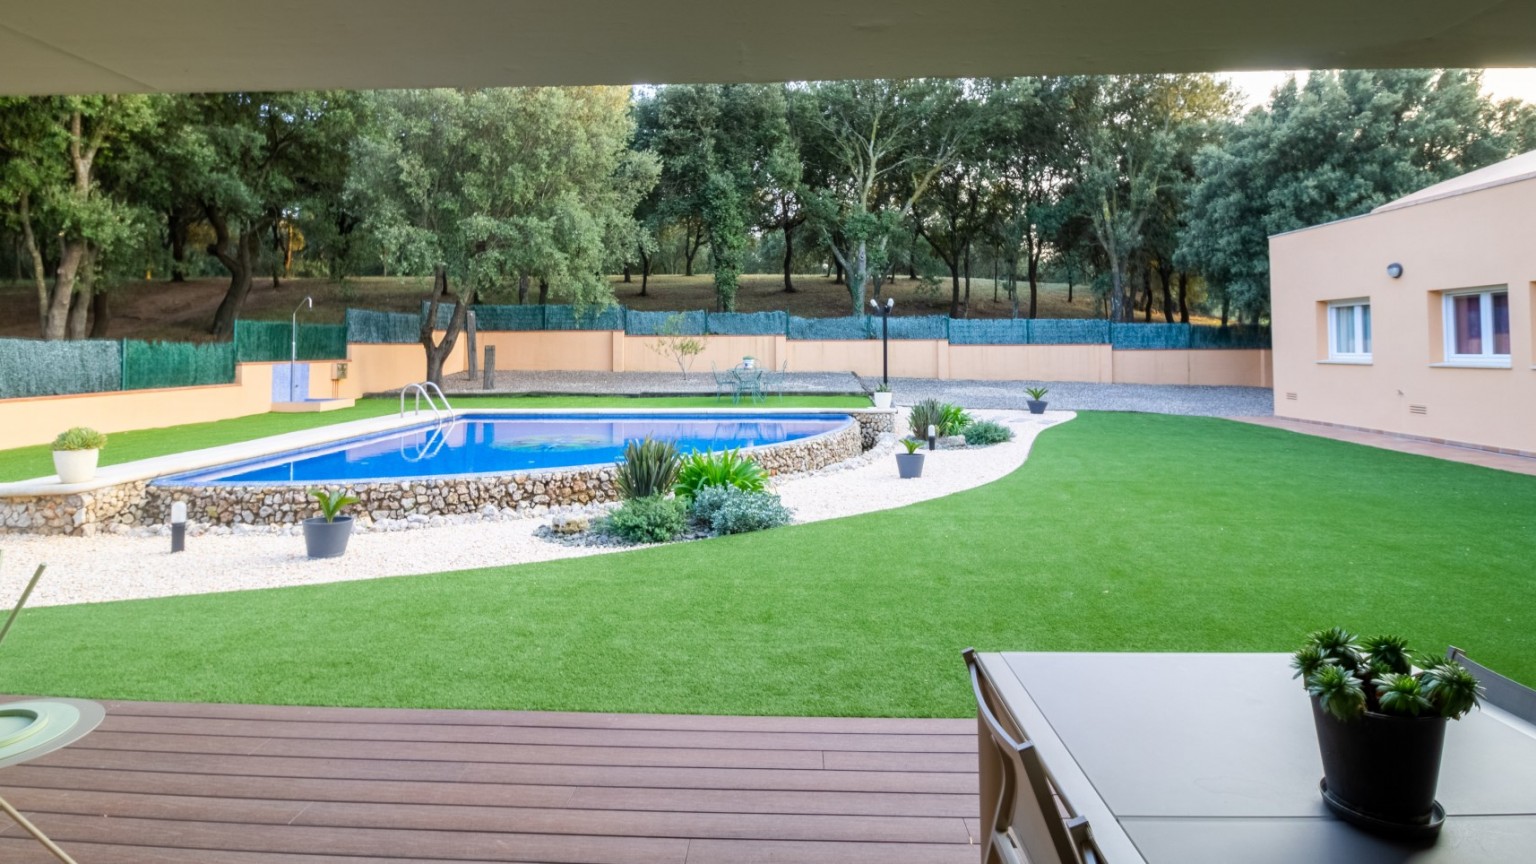 Maison individuelle à vendre, avec grand jardin et piscine privée, à Avinyonet de Puigventós.